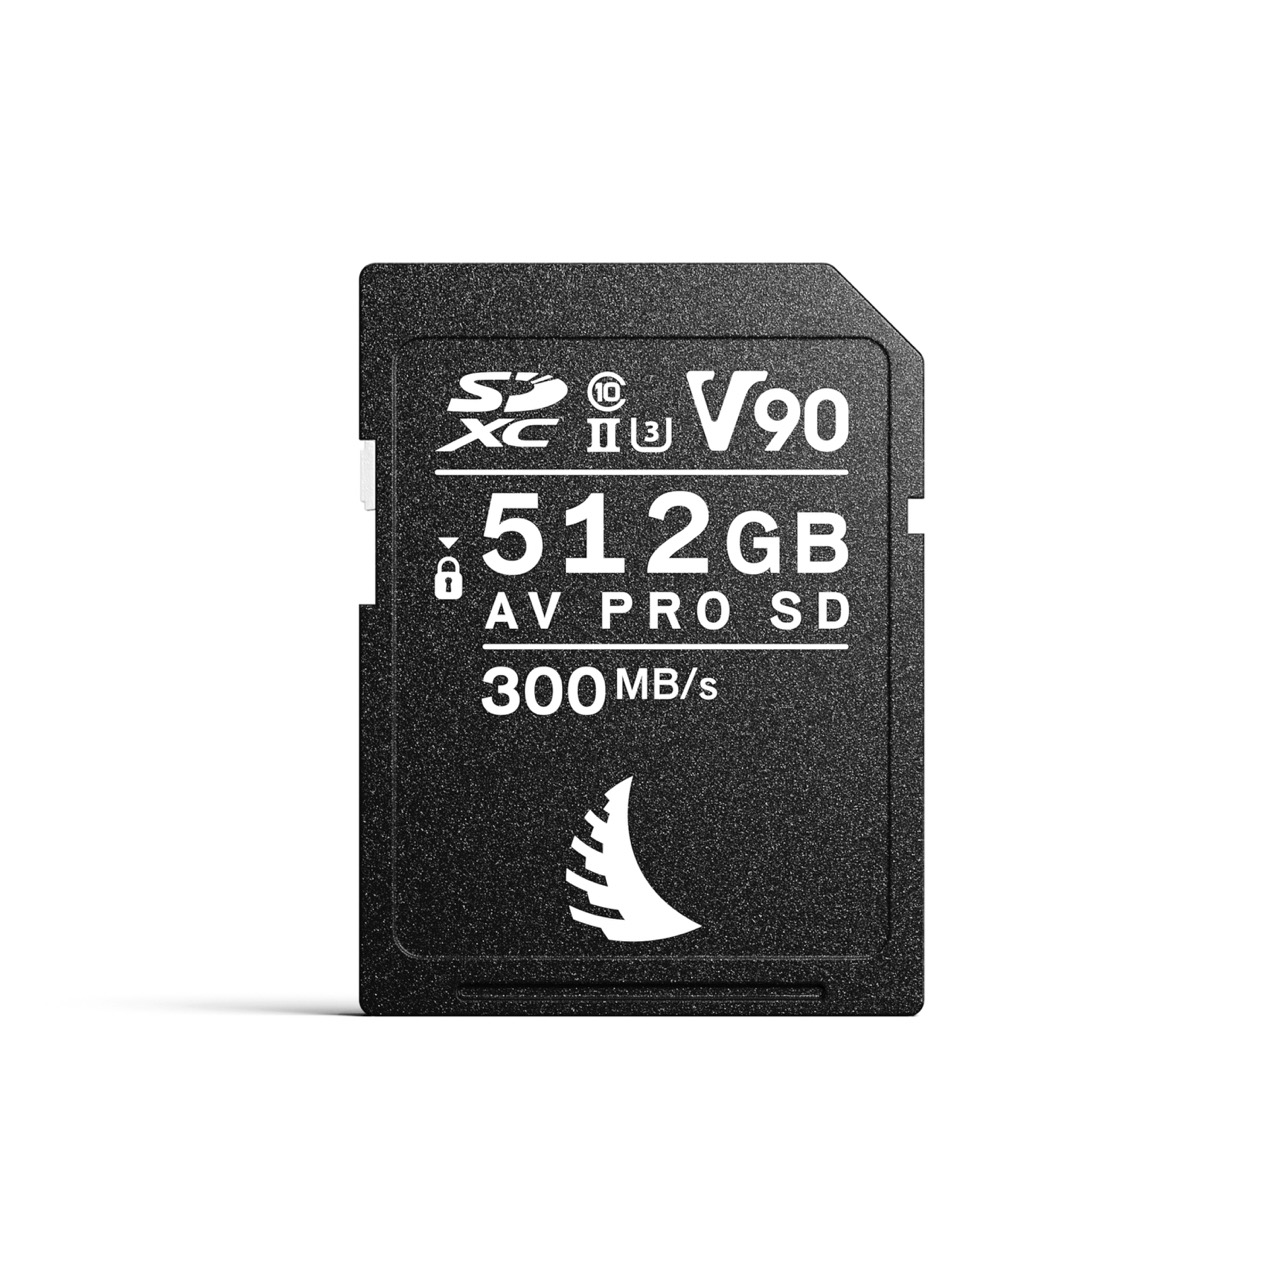 AV PRO SD V90 MK2 512 GB